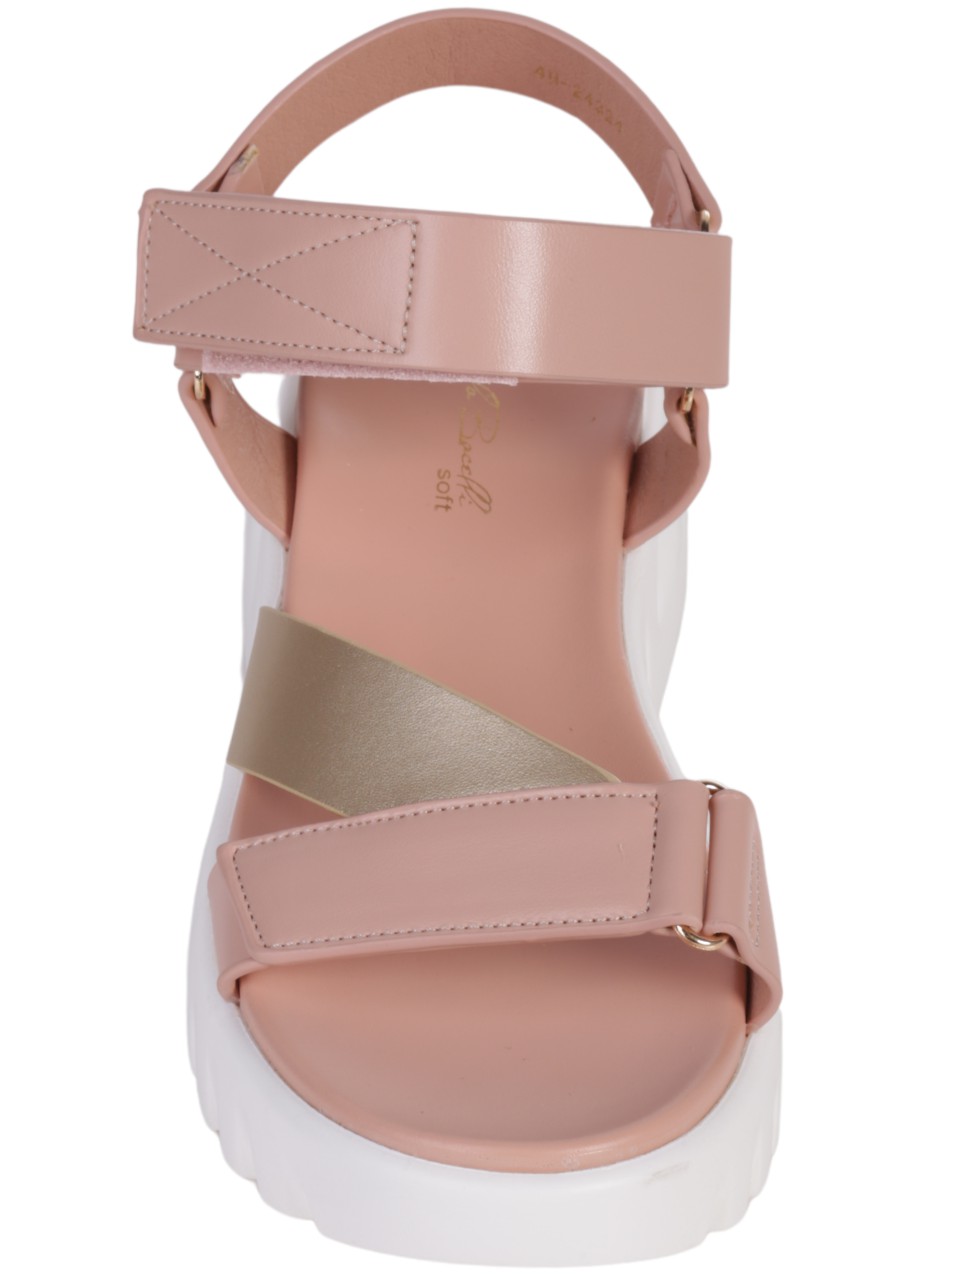 Ежедневни дамски сандали на платформа в розов/златист цвят 4H-24324 pink/gold